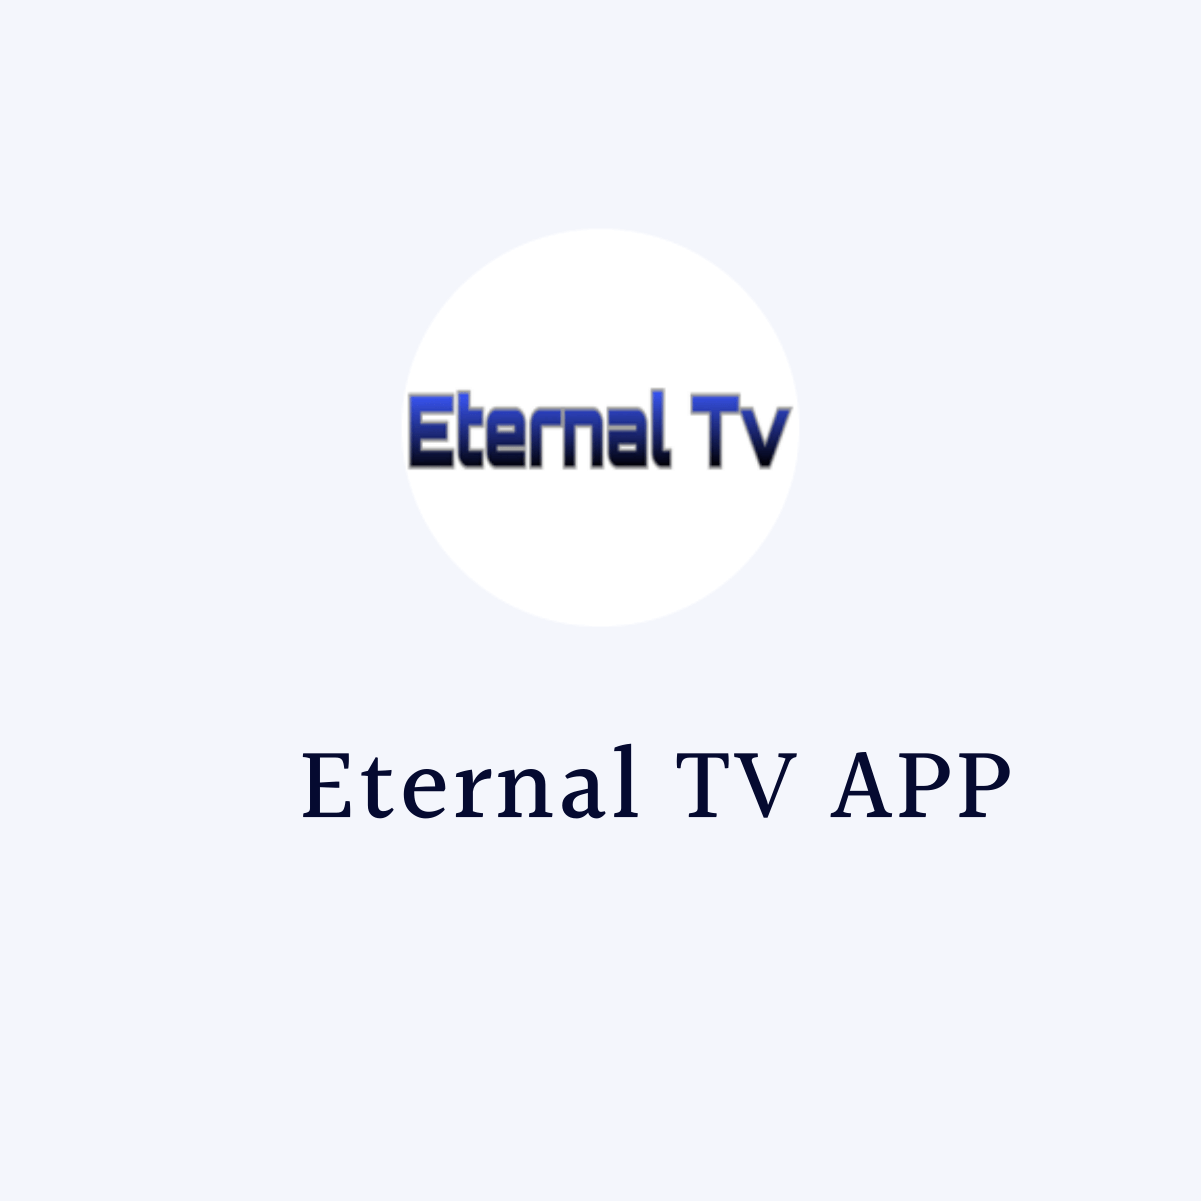 How To Install Eternal Tv On Firestick